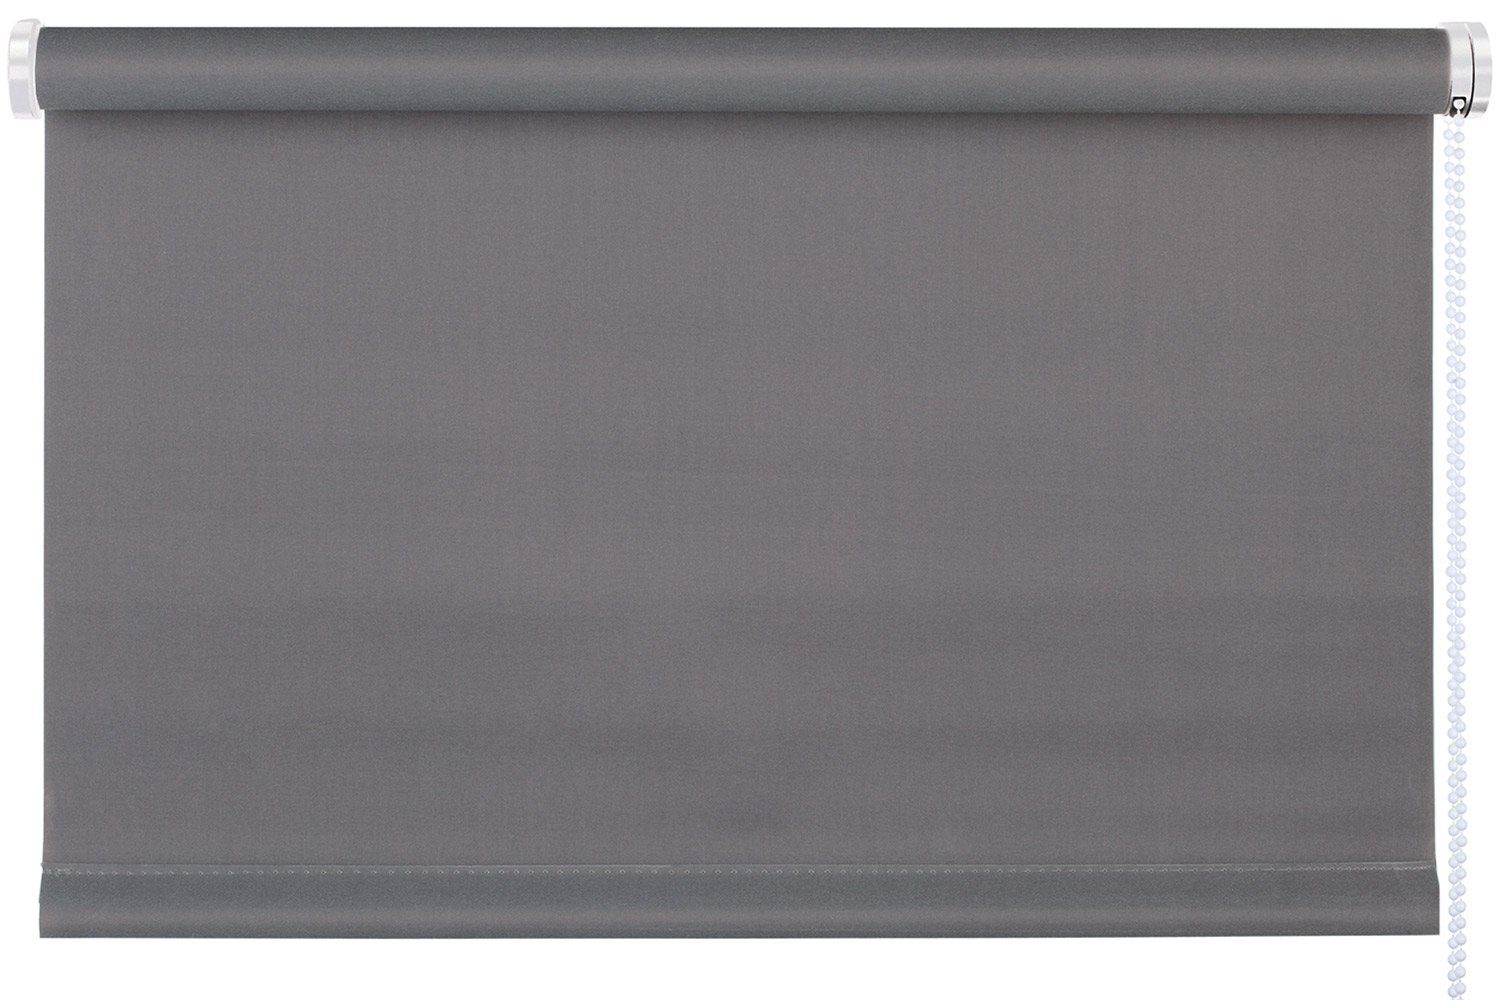 Rollo TREND, Design Rollo, Grau, B 90 x H 210 cm, mydeco, blickdicht, ohne Bohren, Klemmfix